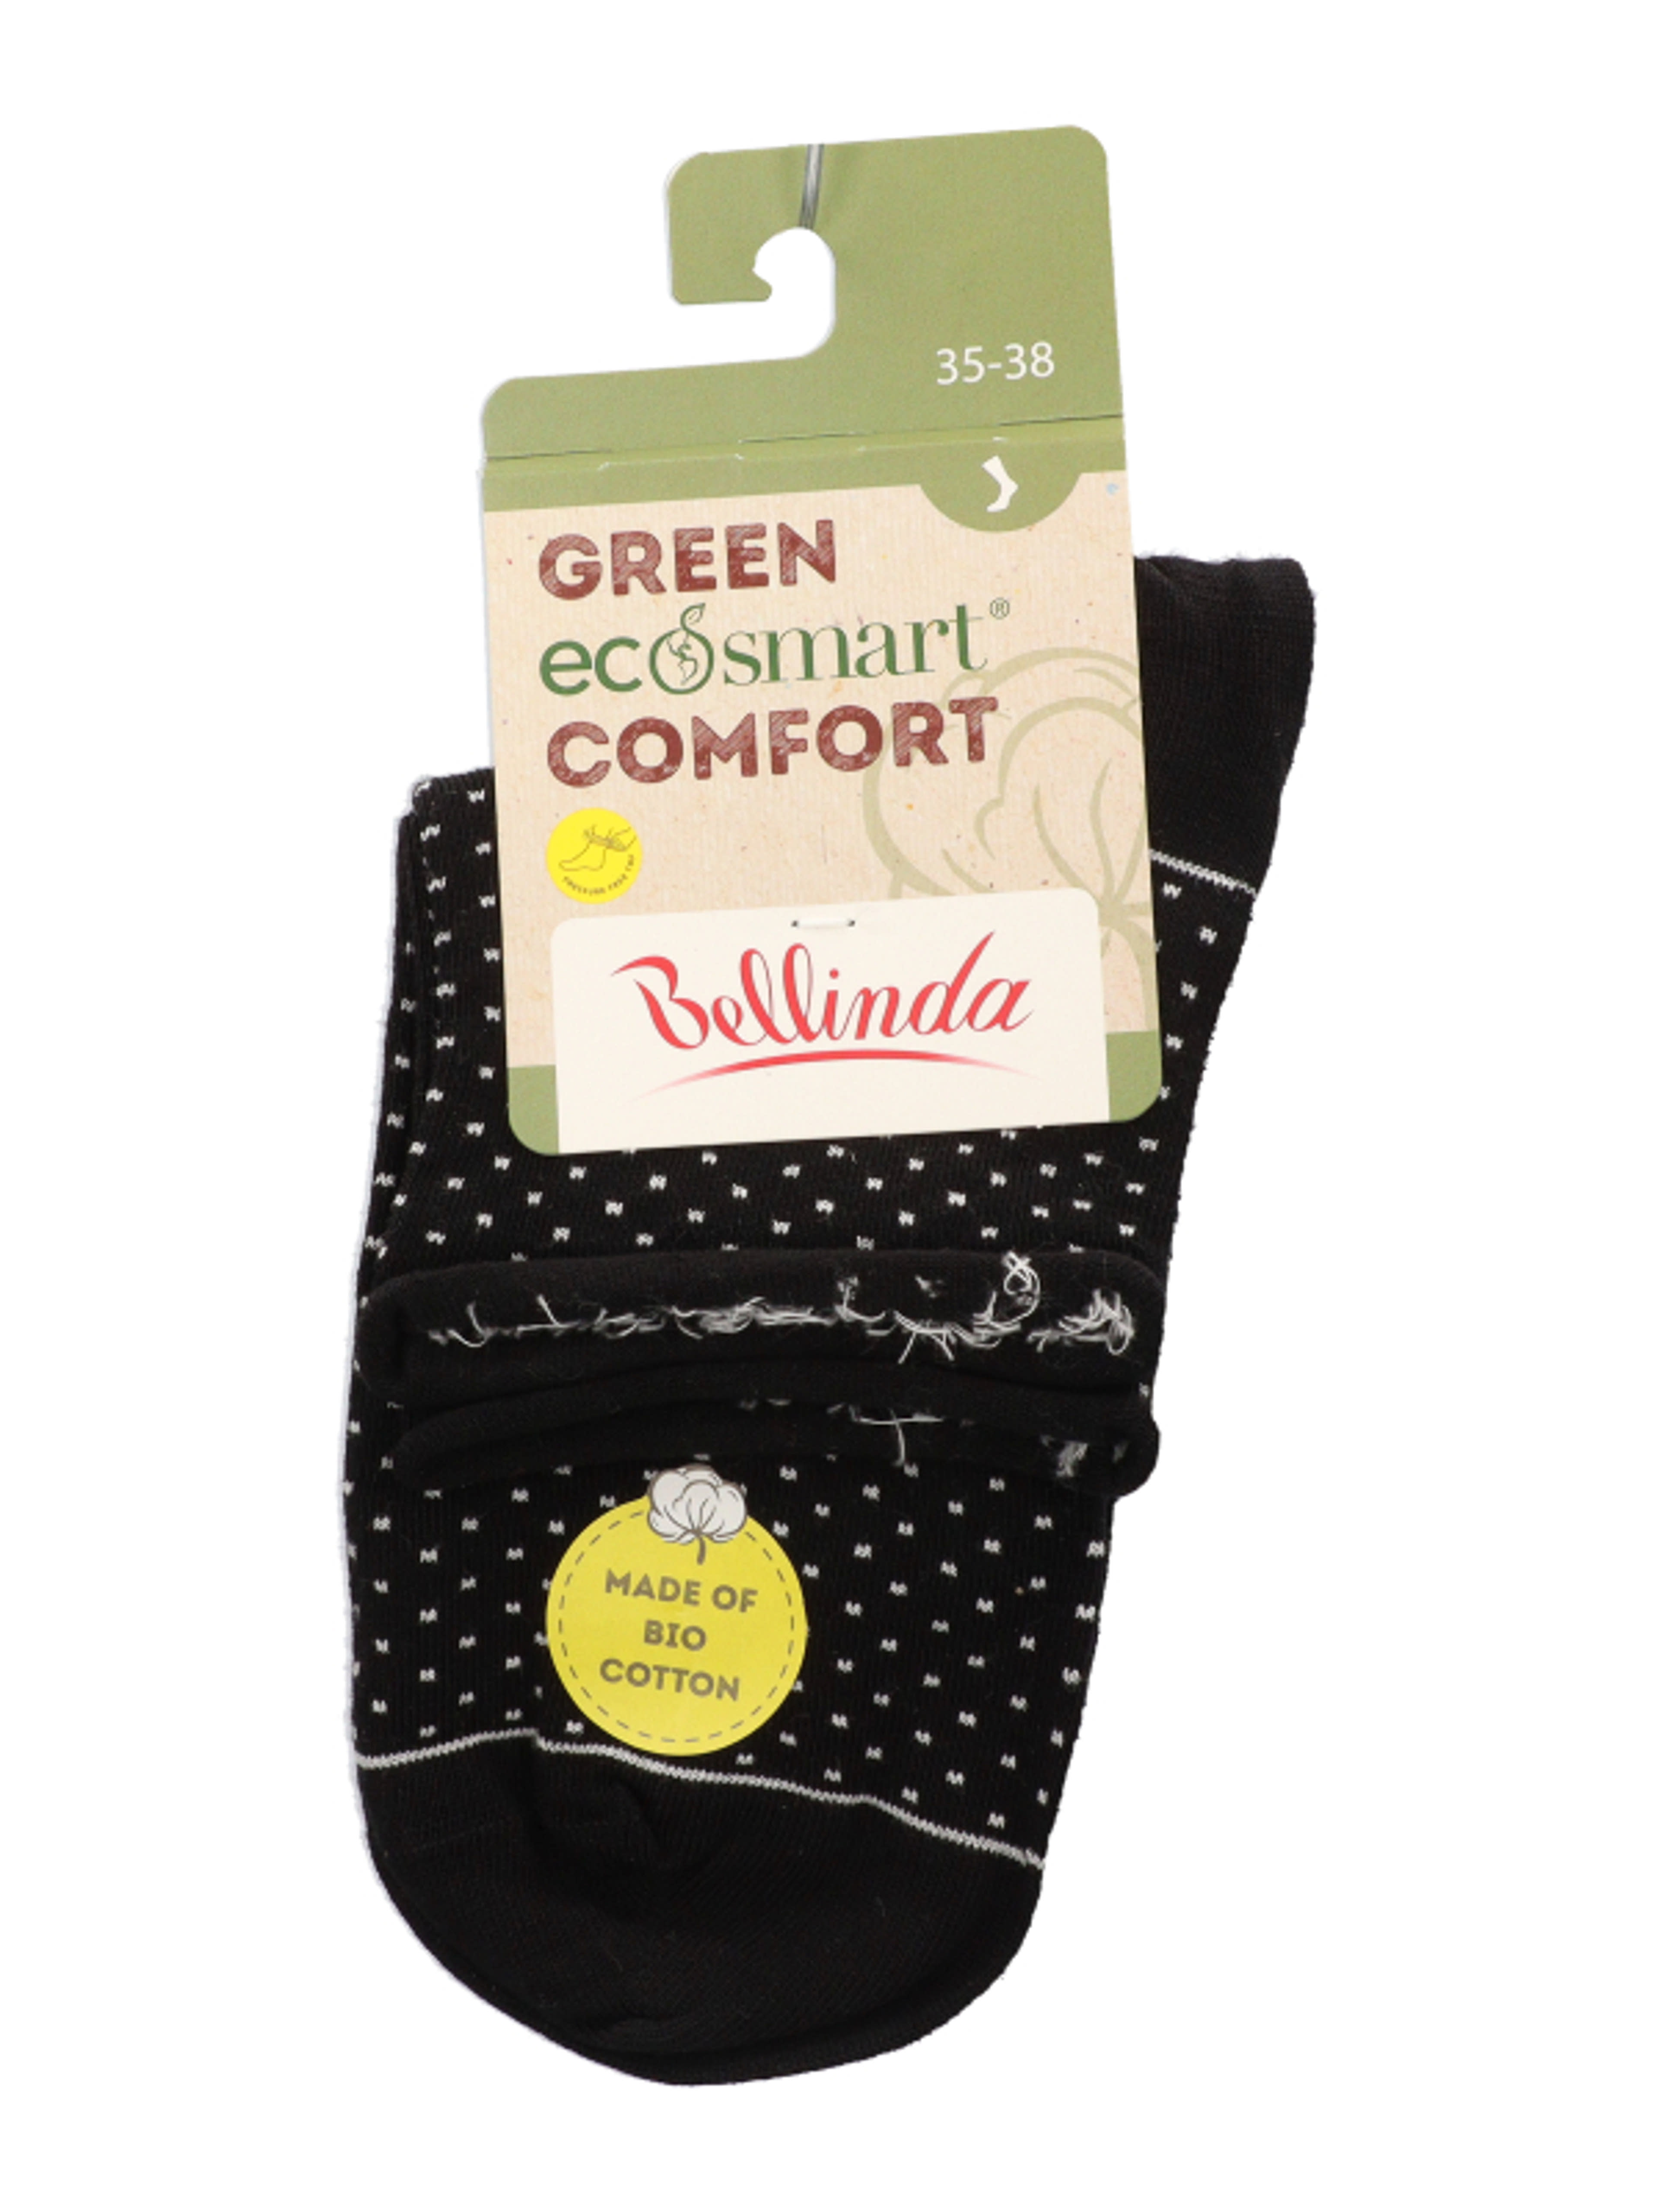 Bellinda Green Ecosmart Comfort női zokni 35-38 - 1 db-1